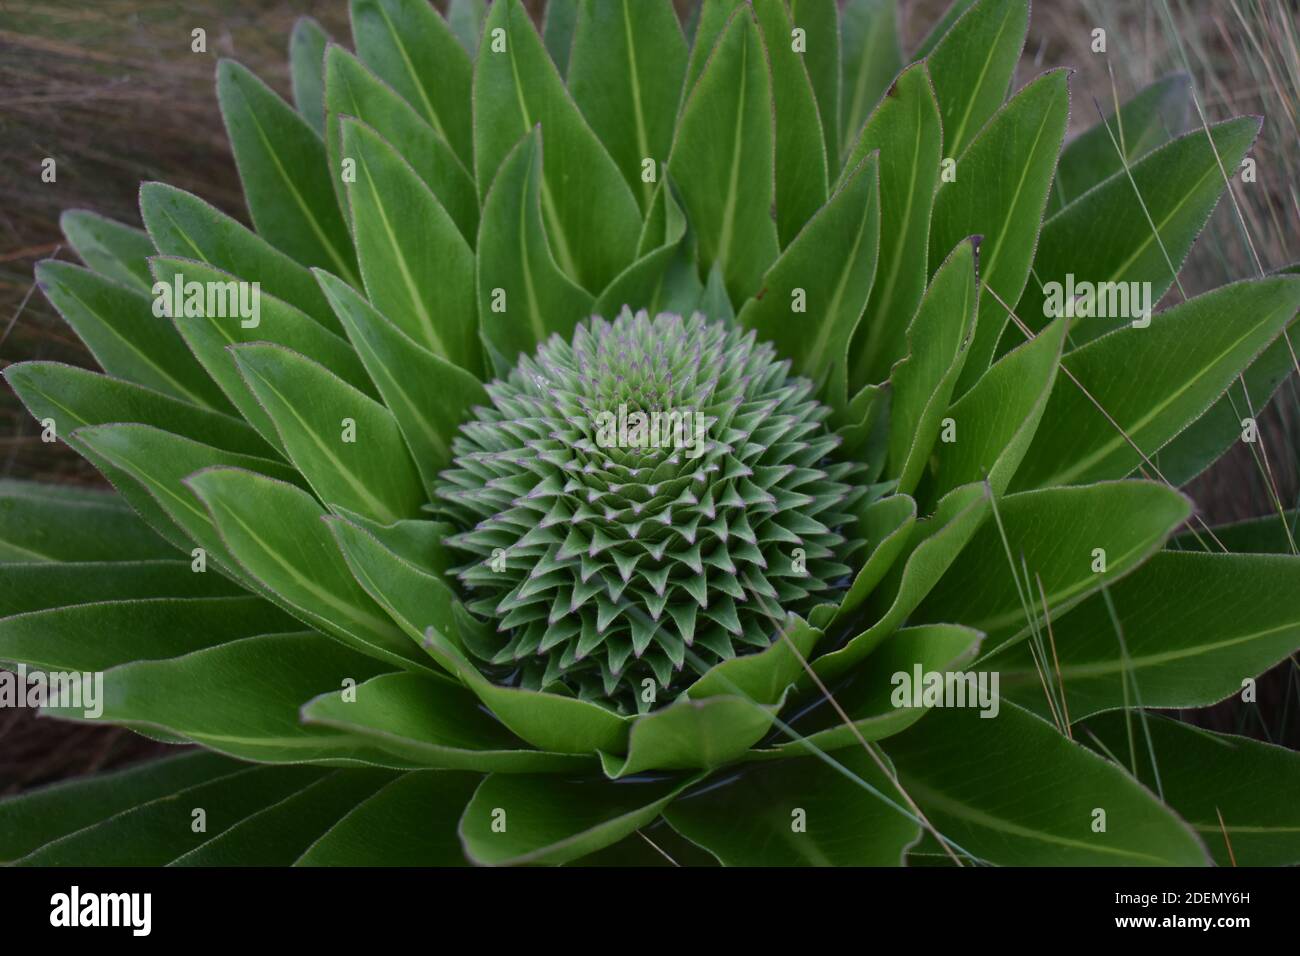 Gladiolus sp, photo taken in mt kenya Stock Photo